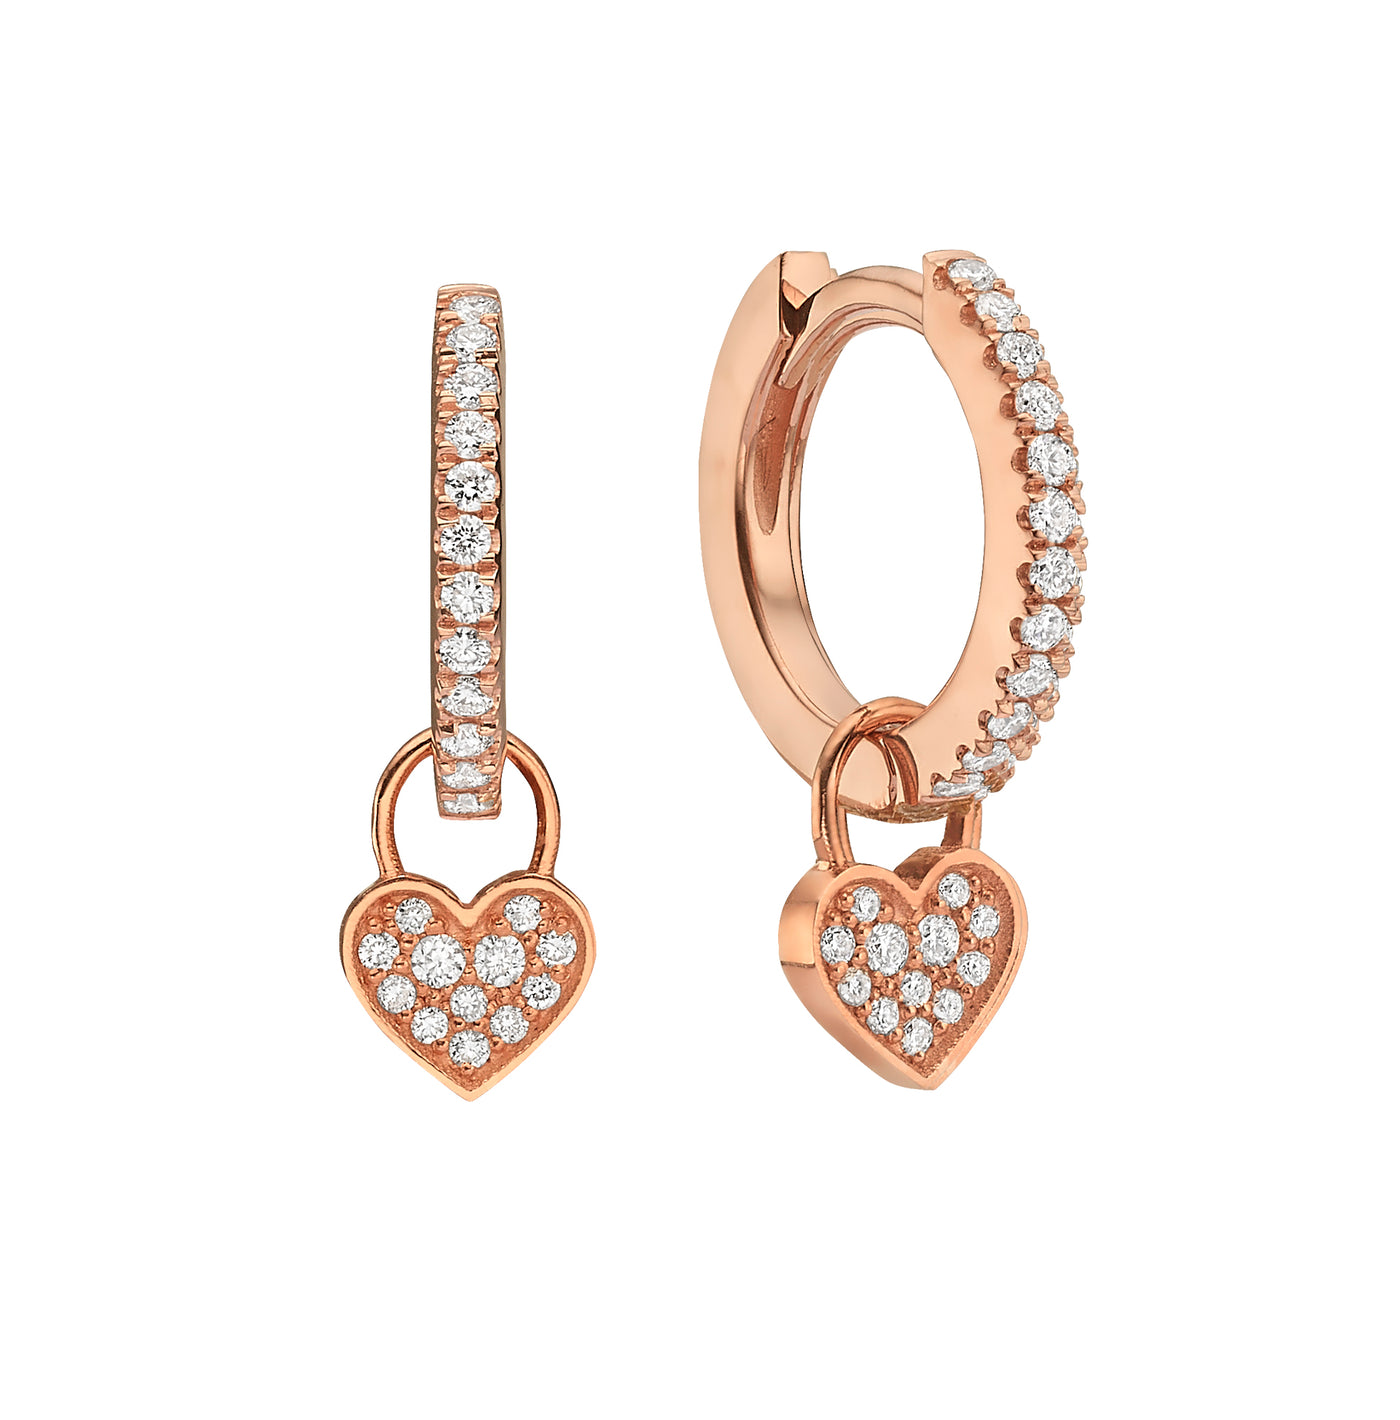 Midi Gypsy hearts earrings - diamonds heart